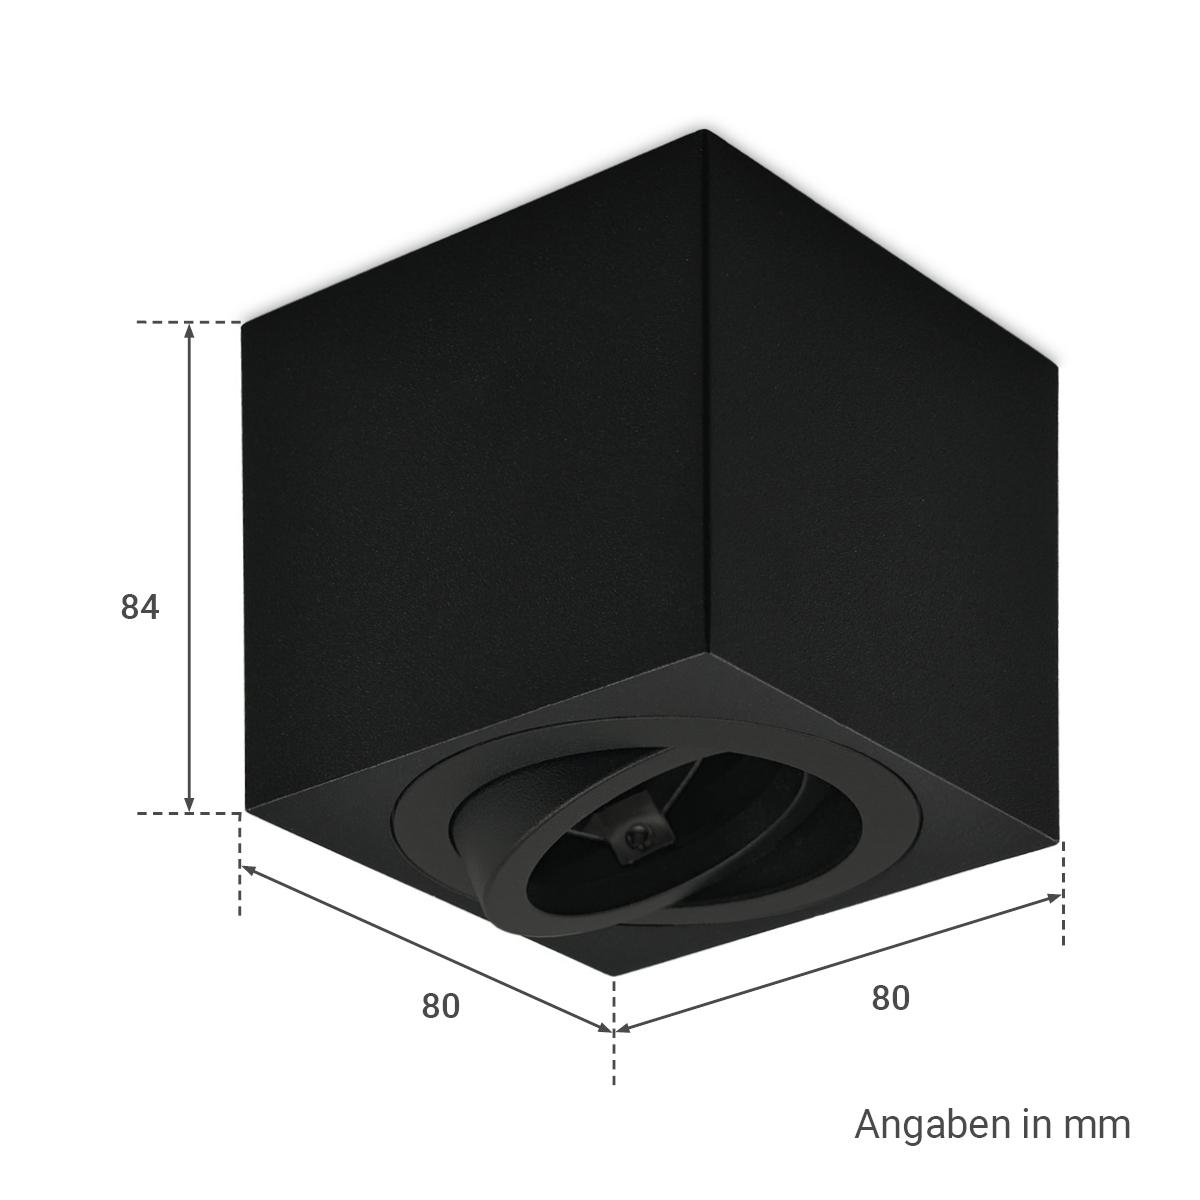 Eckiger Aufbaustrahler schwenkbar Deckenbeleuchtung - Farbe: schwarz - LED Leuchtmittel: GU10 5W Warmweiß 230V dimmbar 40°